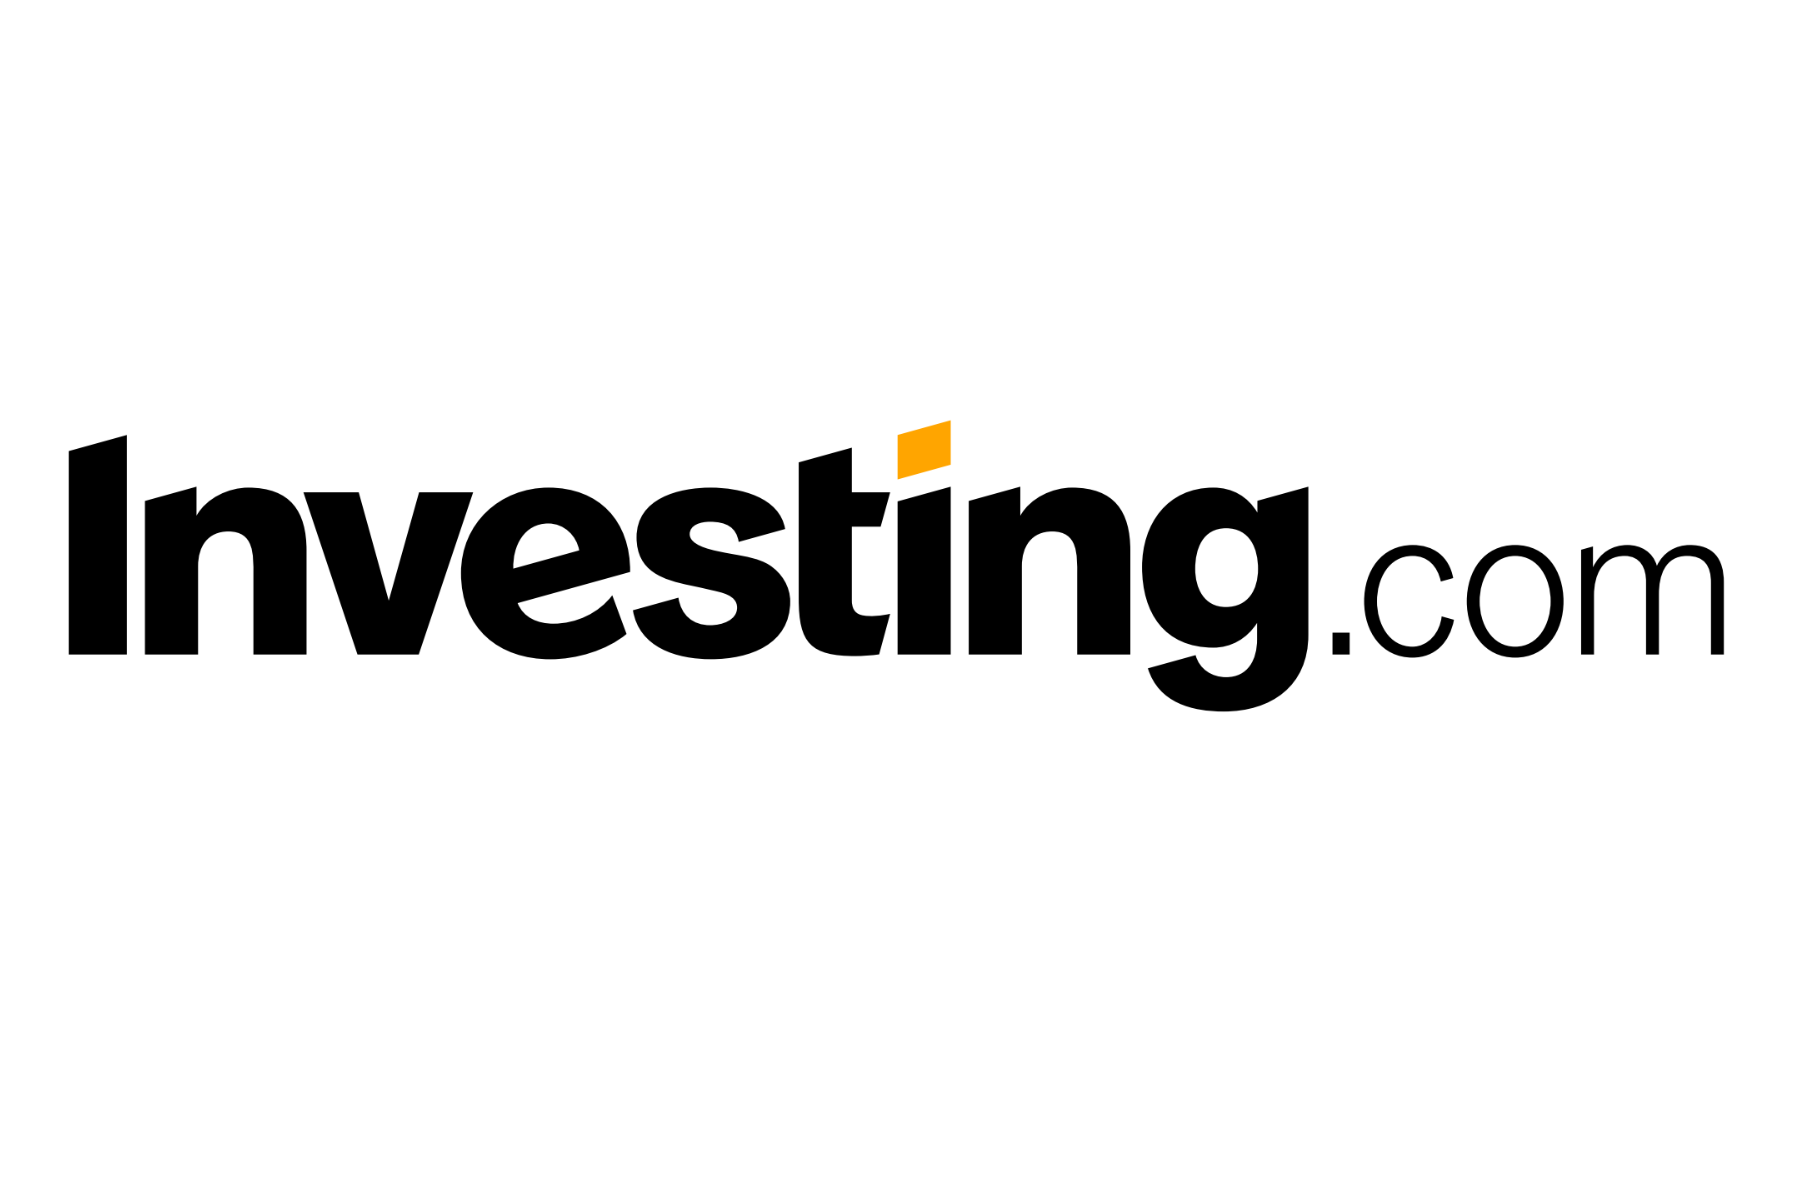 Ooget com. Investing.com. Investing лого. Investing.com logo. WINVESTOR логотип.